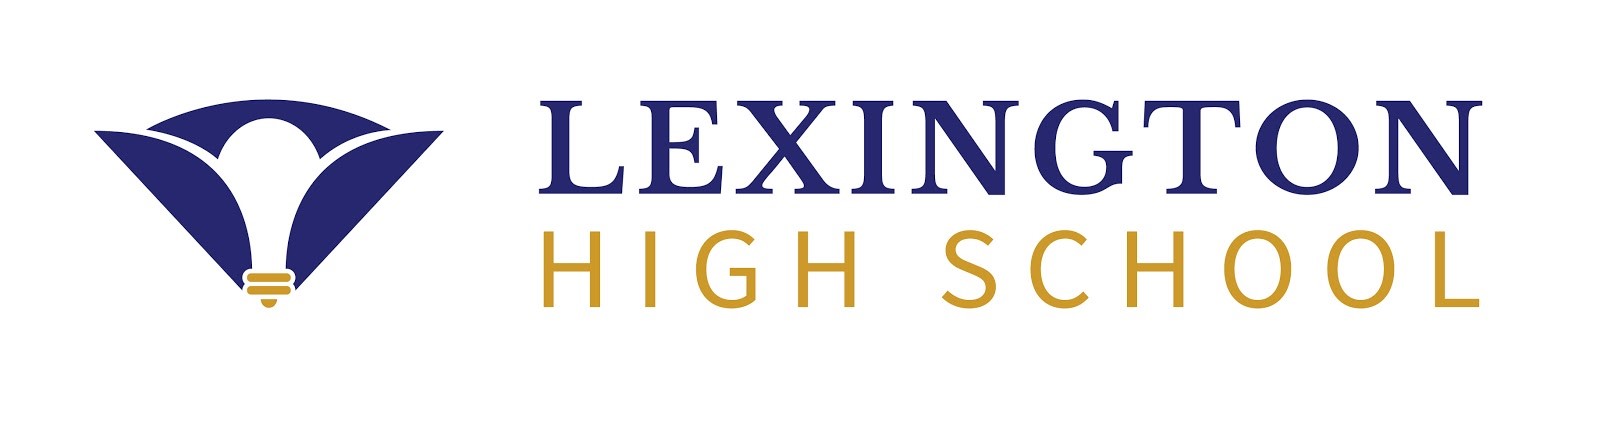 Lexington High School logo